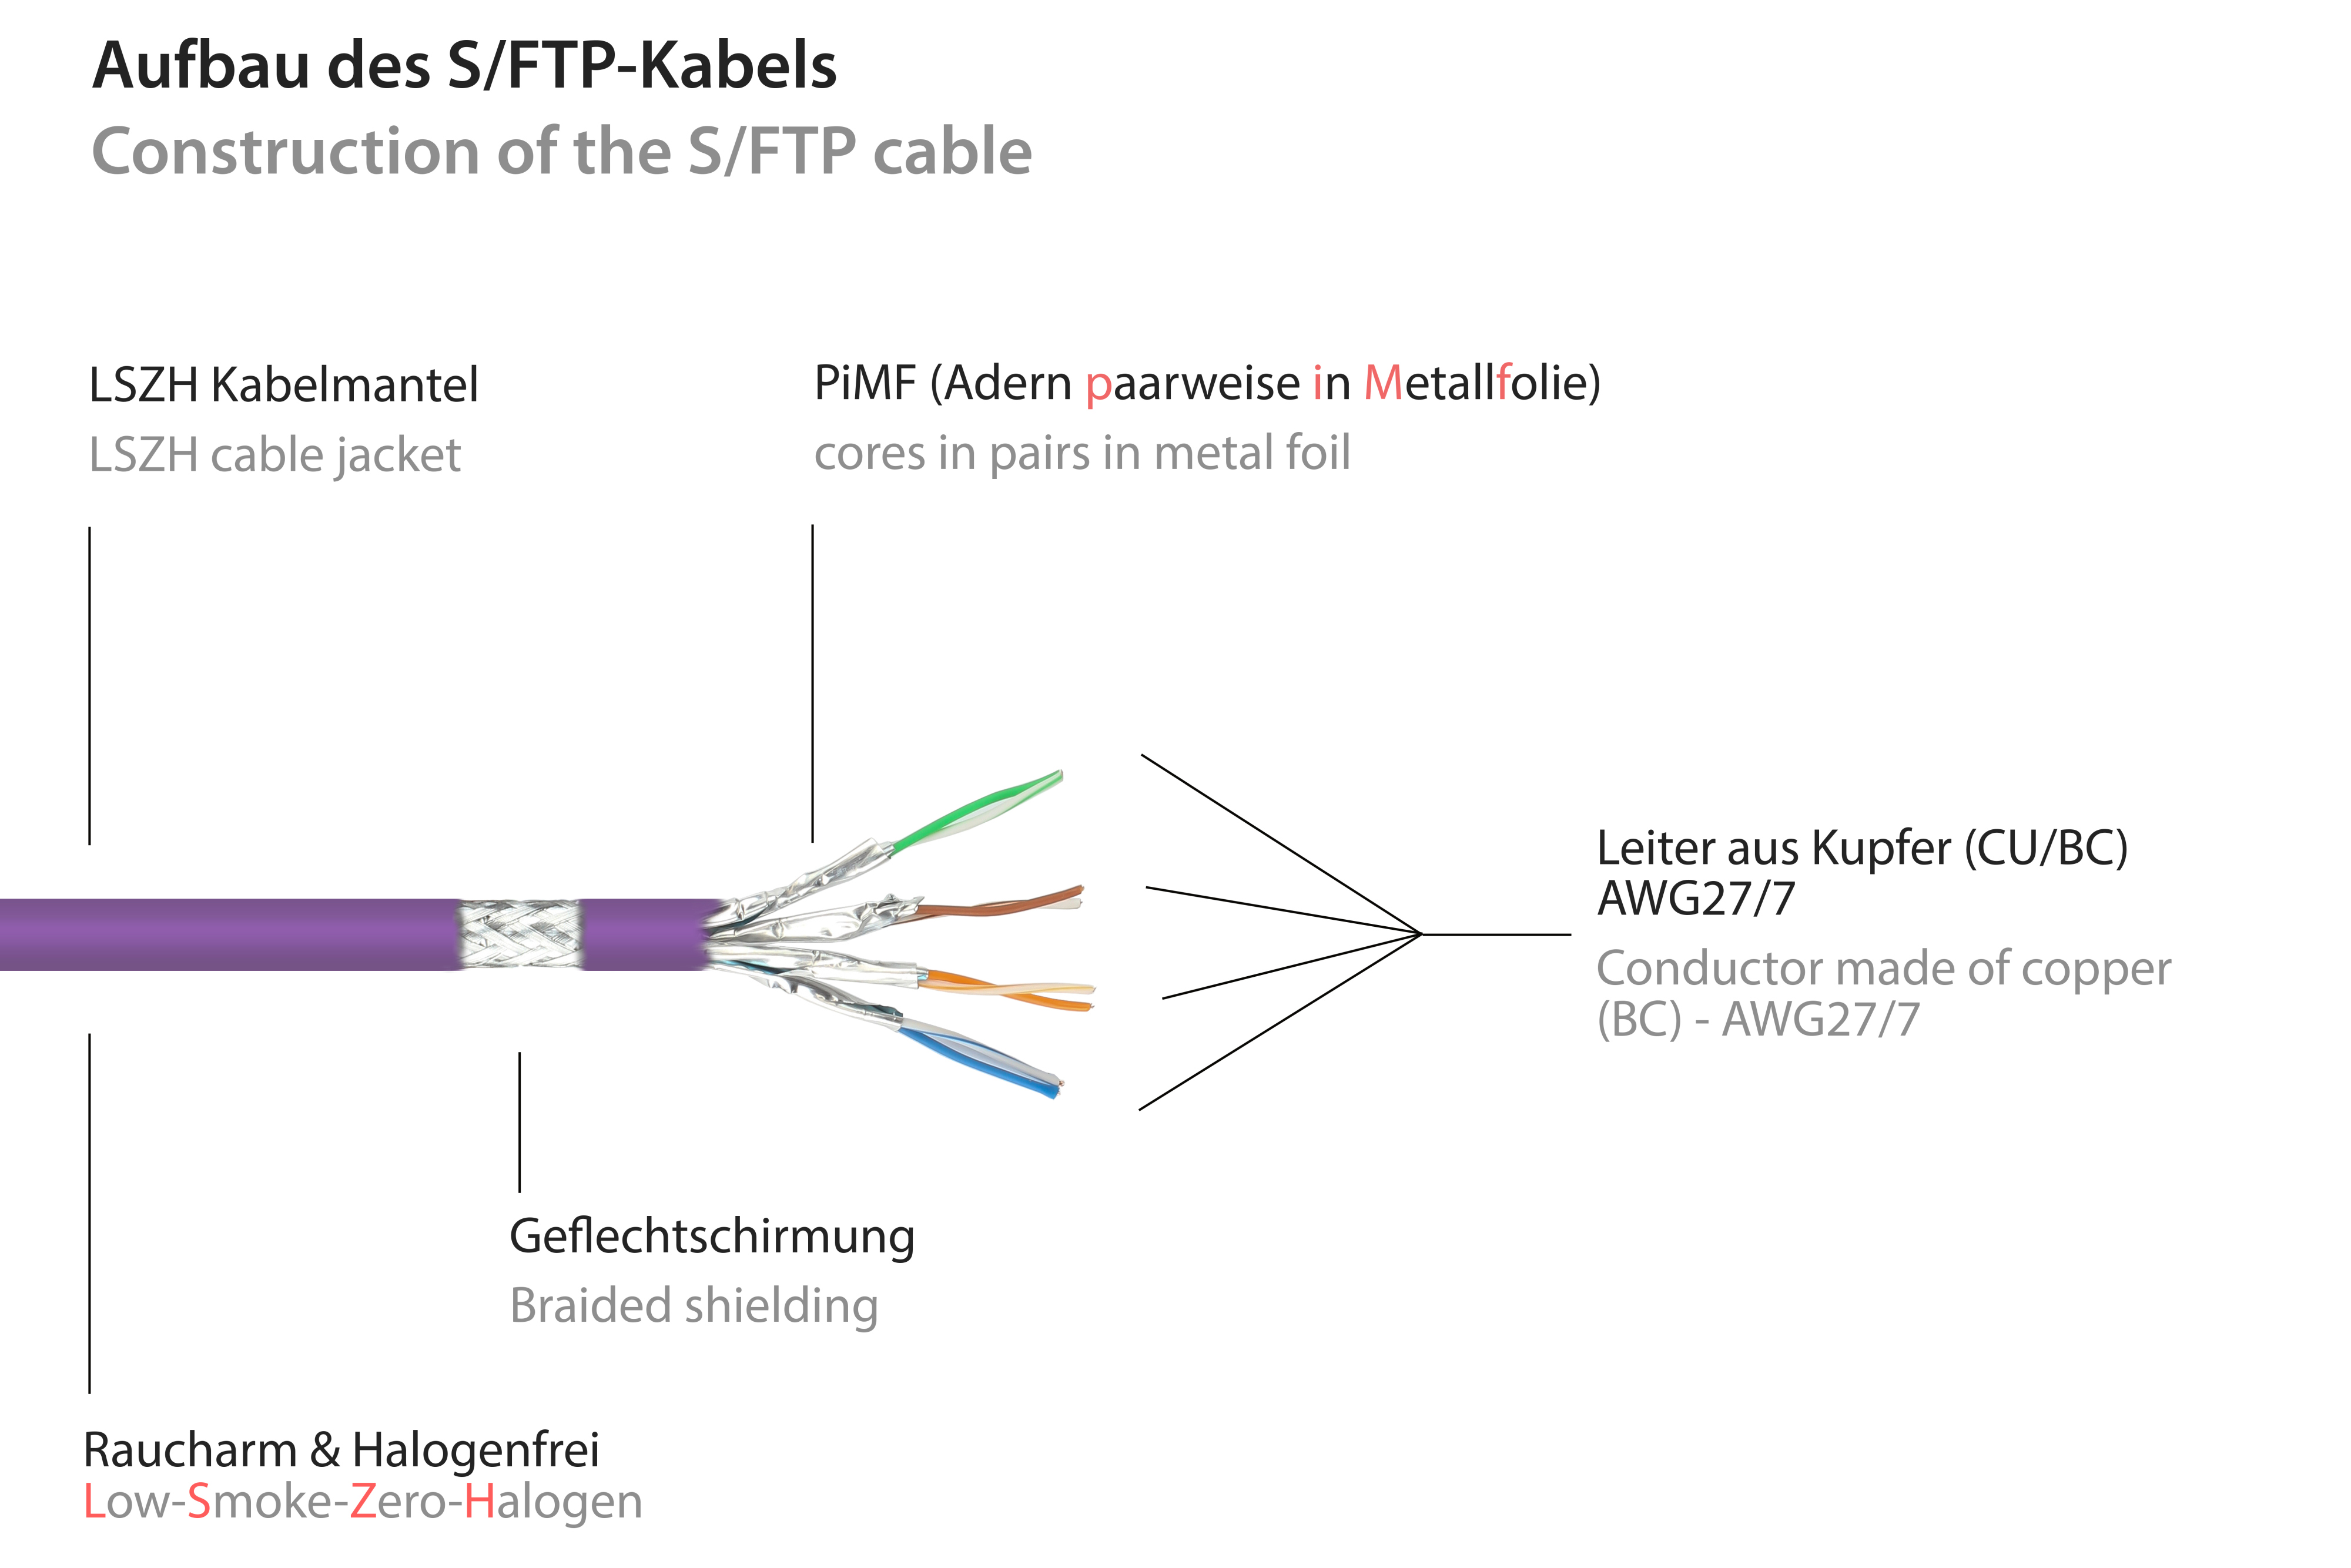 30 CONNECTIONS m halogenfrei, Netzwerkkabel, violett, GOOD PiMF, 500MHz, S/FTP,